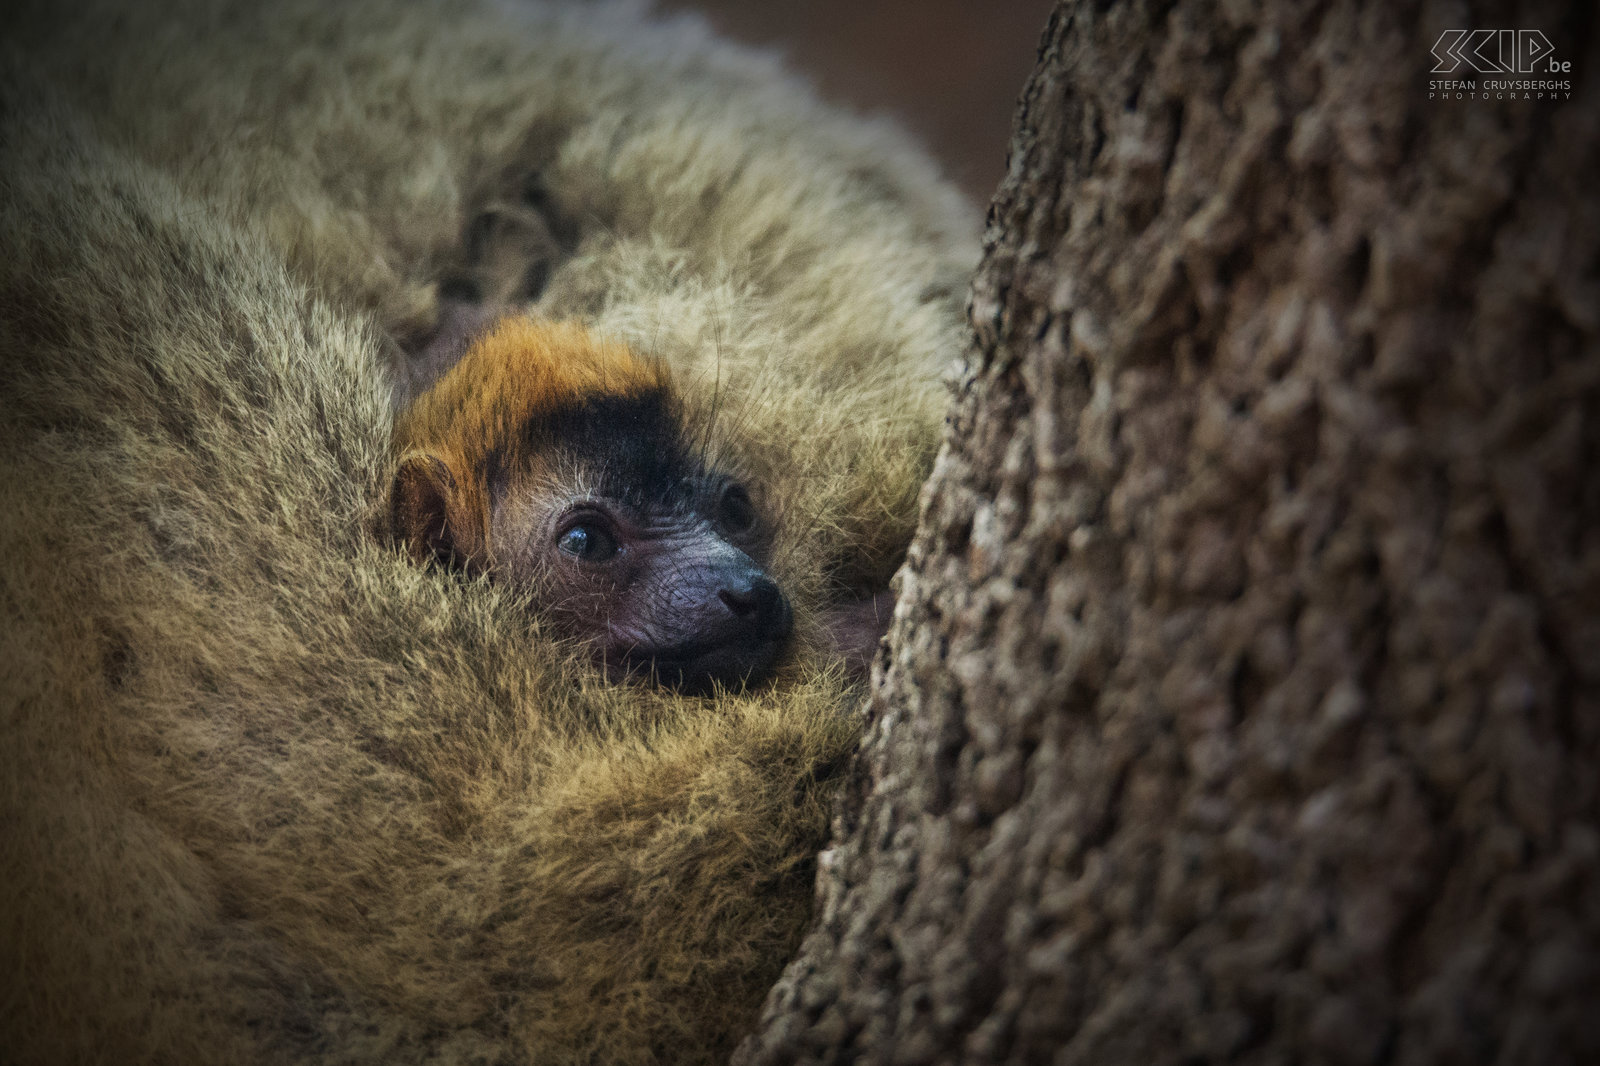 Kirindy - Baby red-fronted brown lemur A baby red-fronted brown lemur well protected by his mother. Stefan Cruysberghs